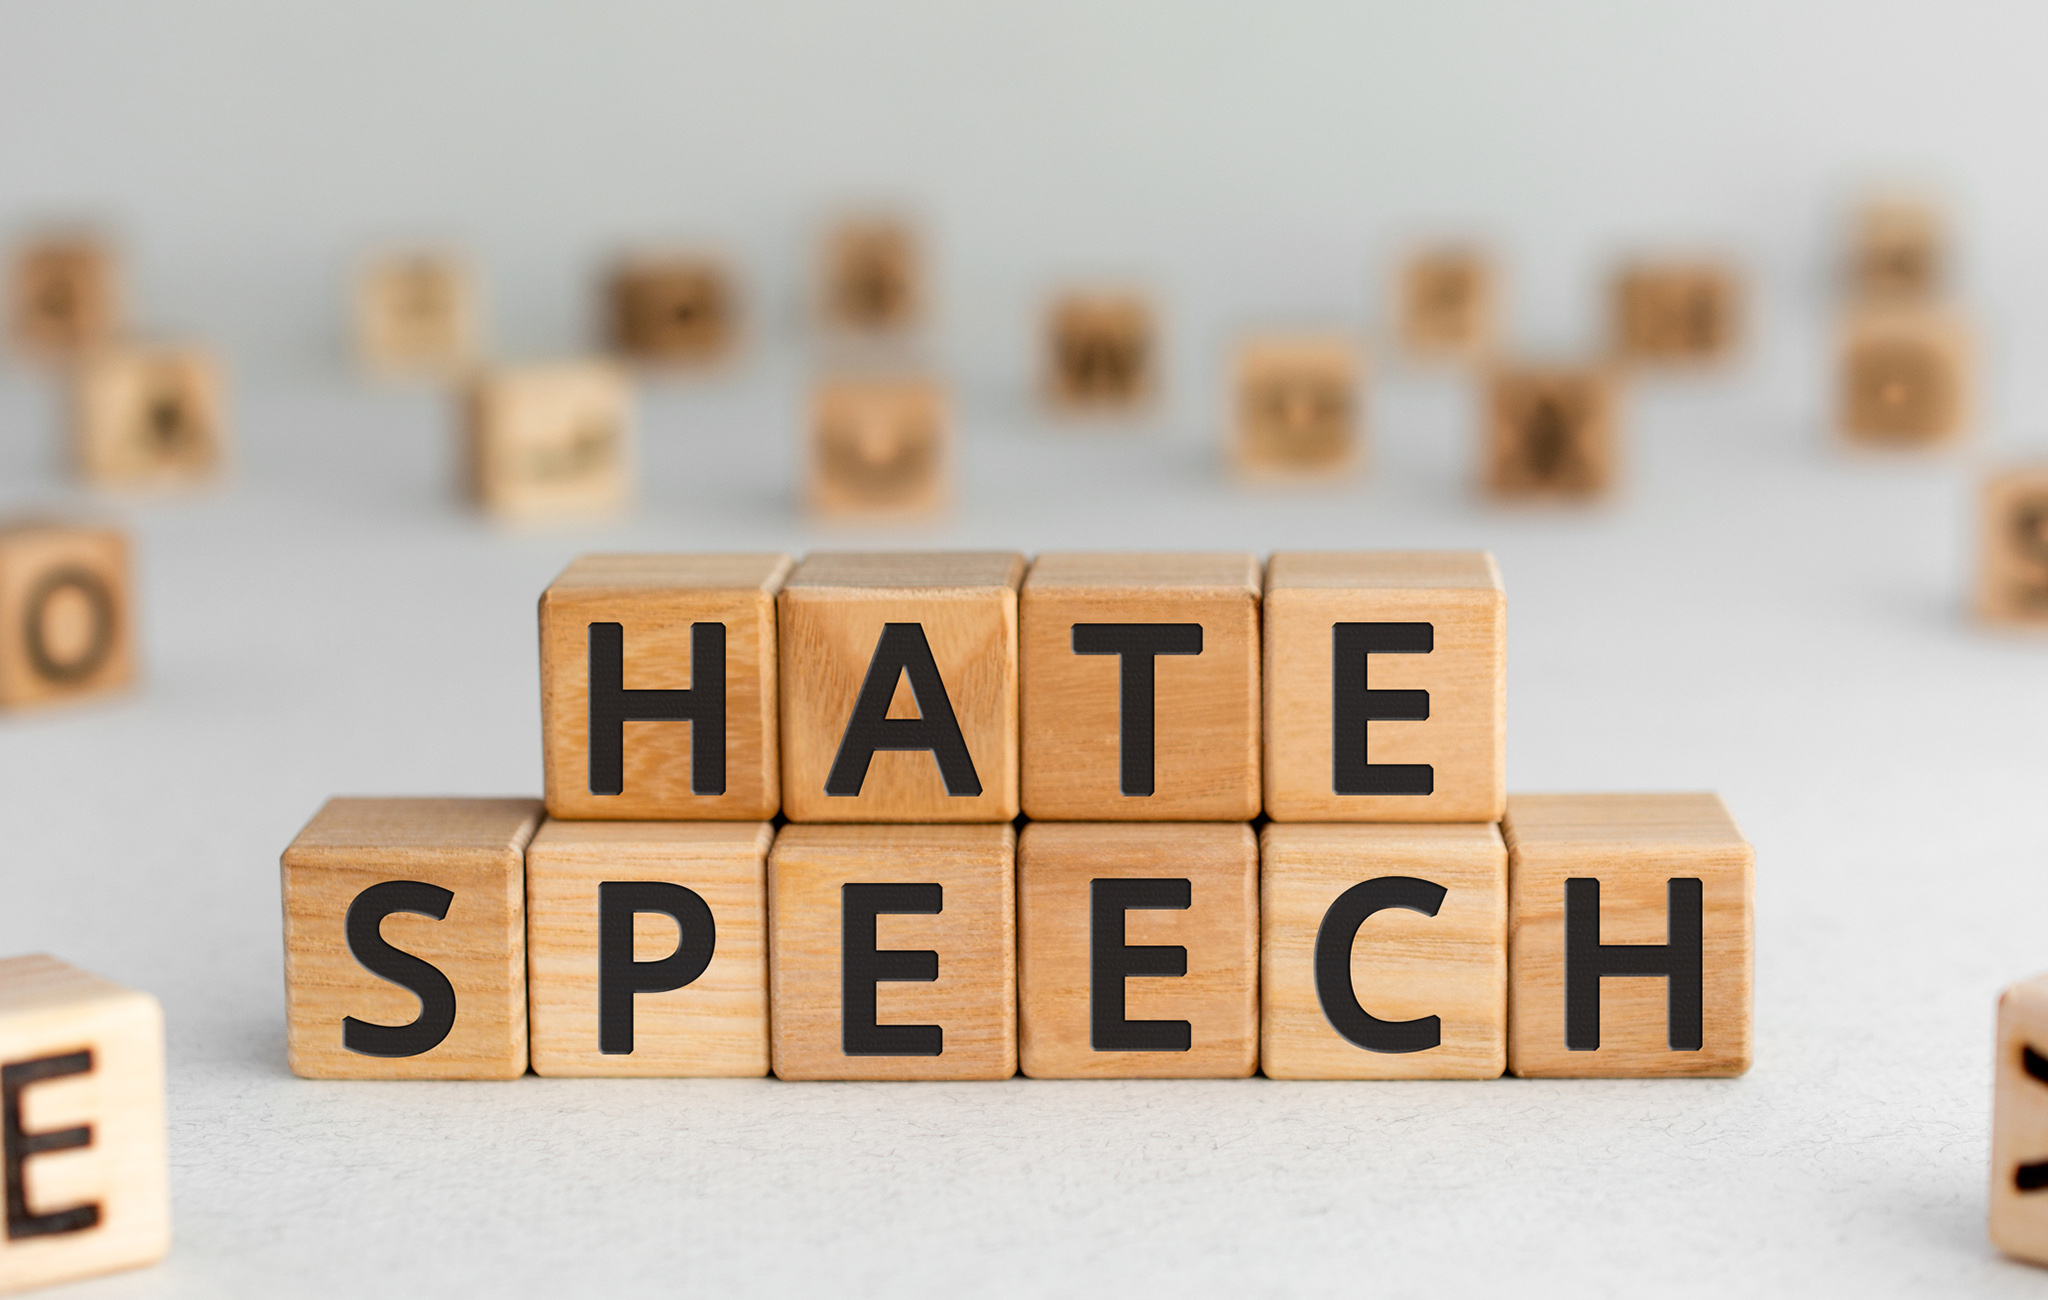 hate speech deutsch